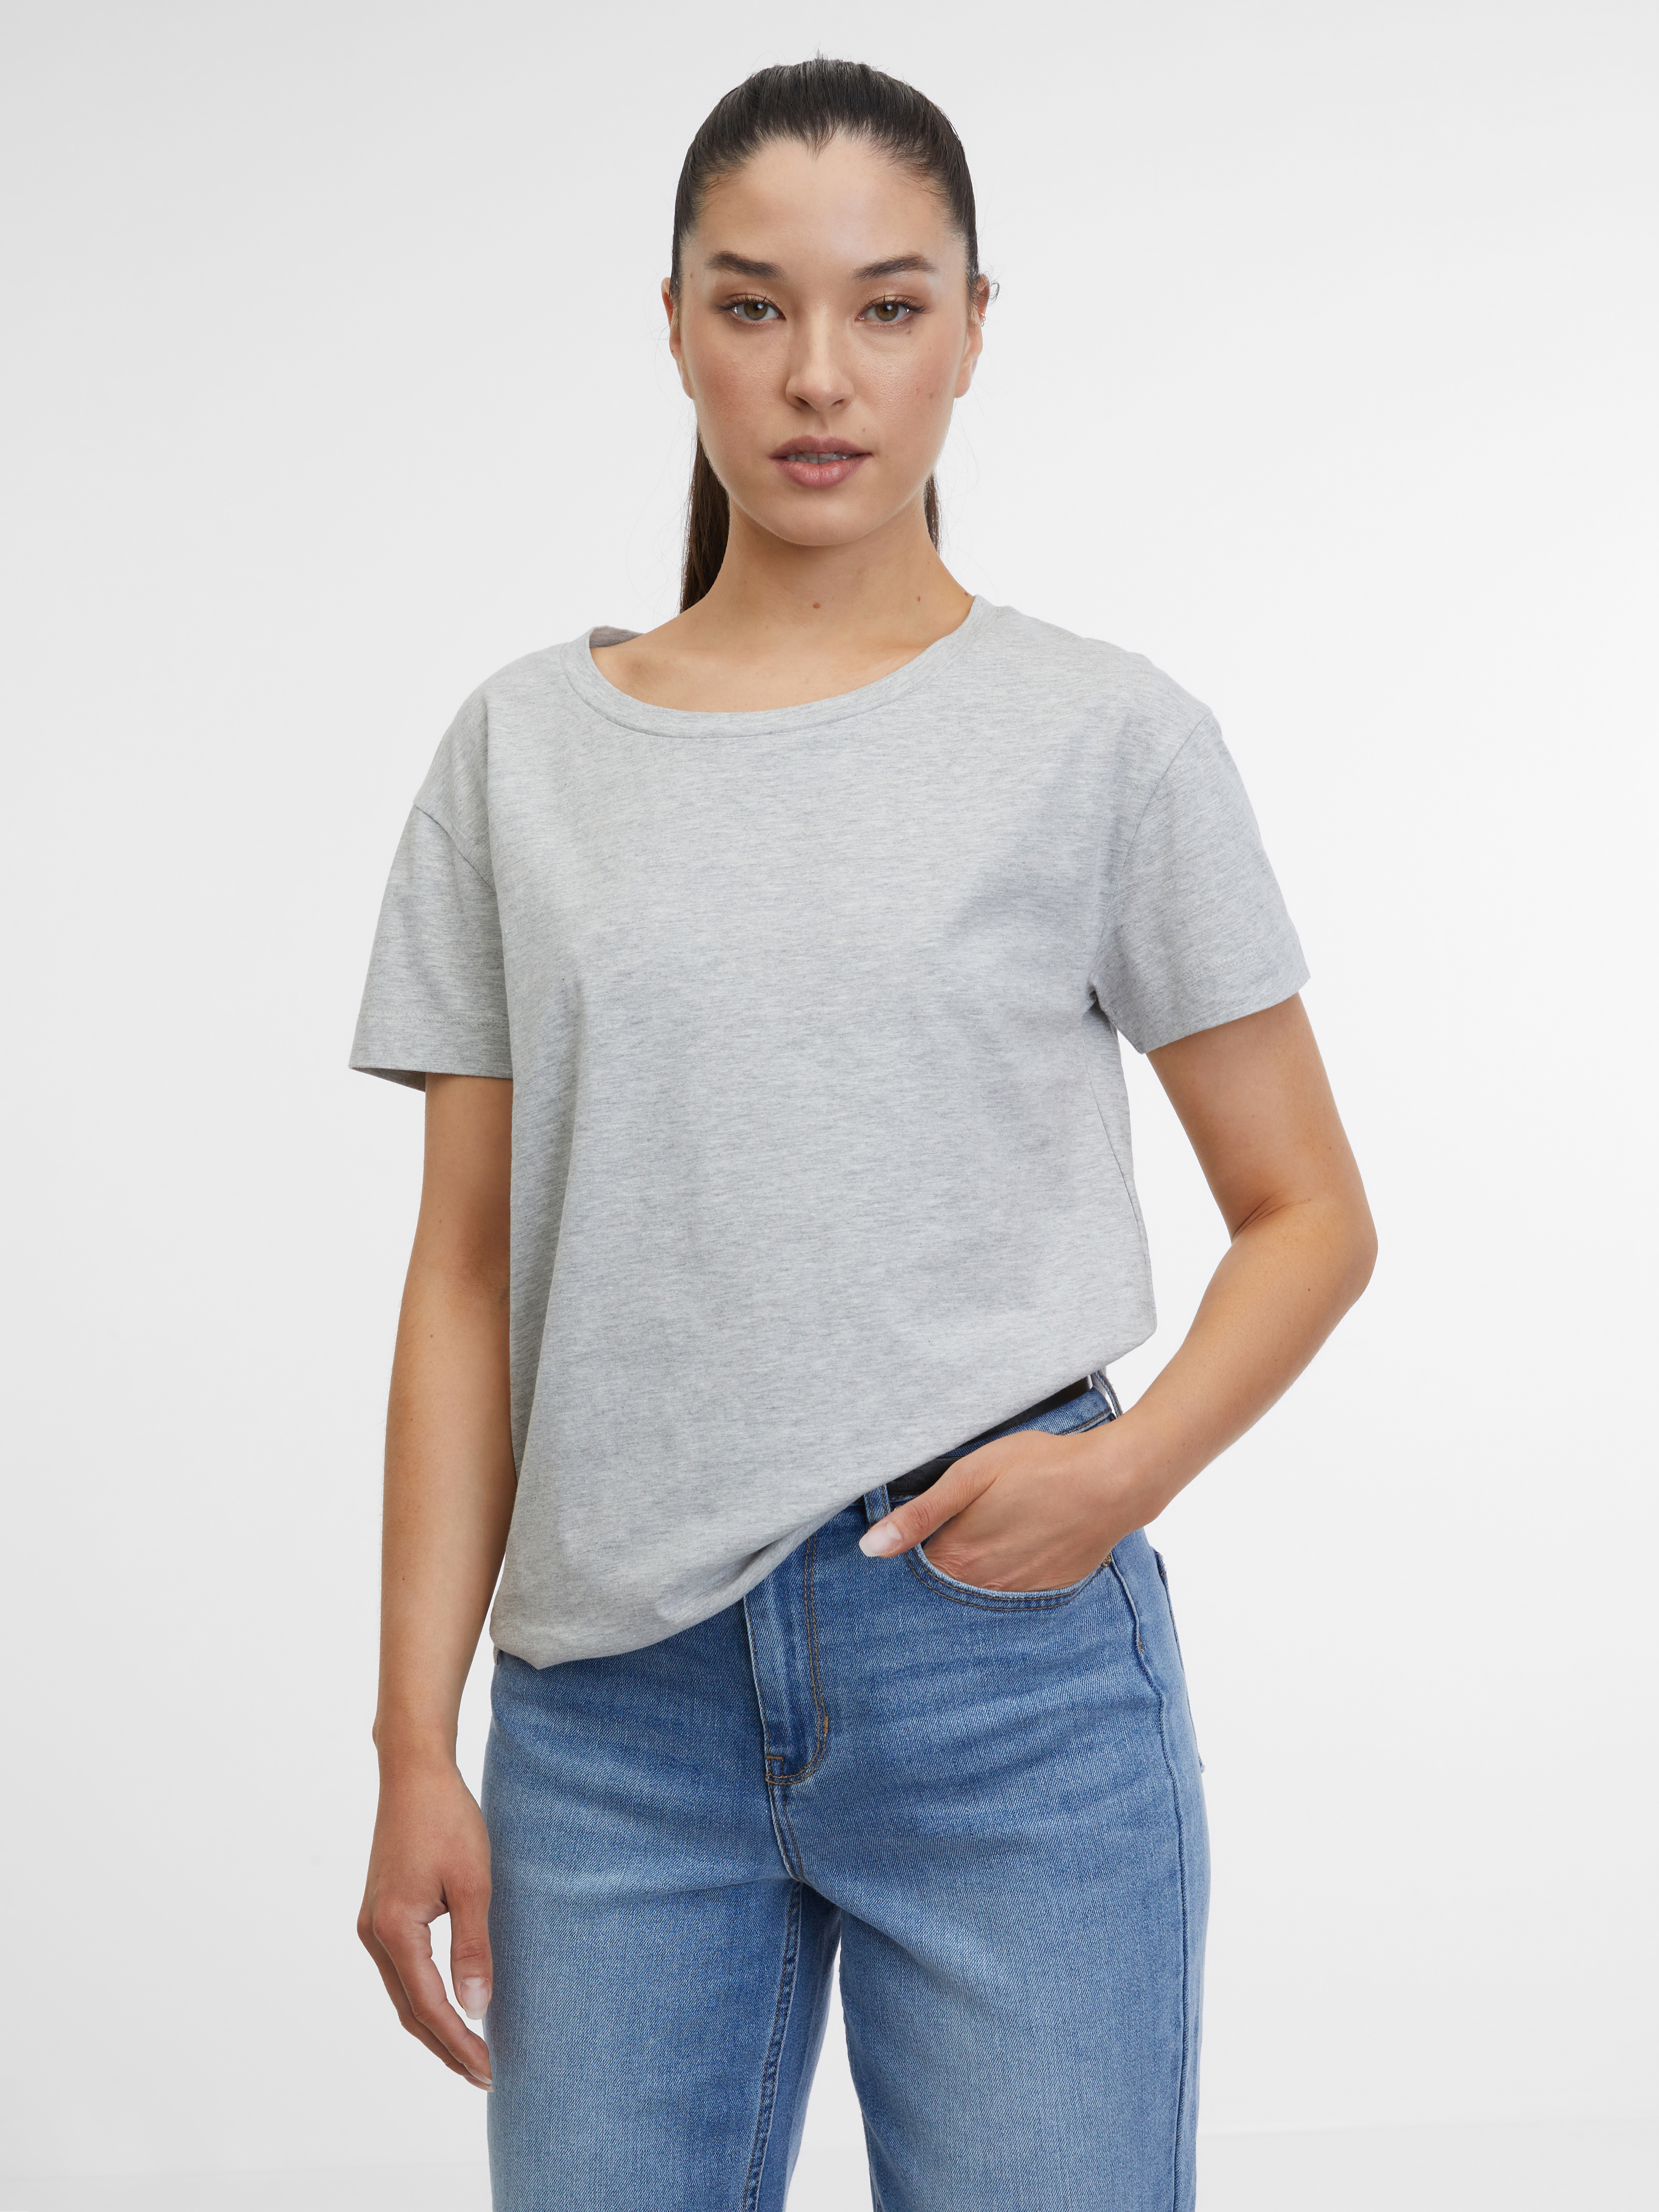 Orsay Women's Grey T-Shirt - Women